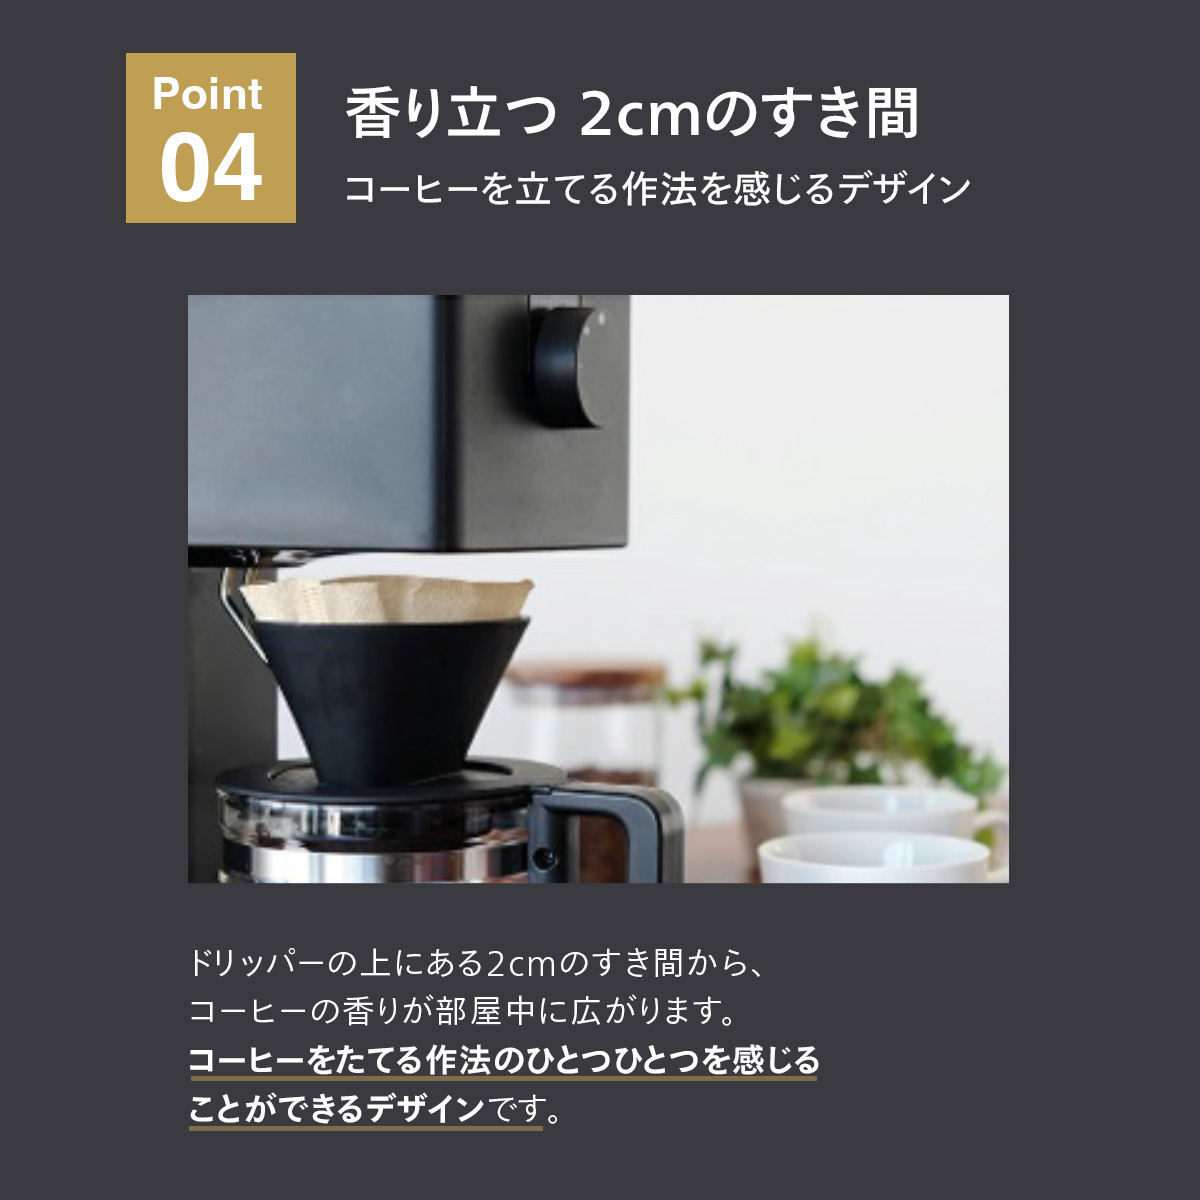 ツインバード 日本製 全自動 コーヒーメーカー 3杯用 カフェ・バッハオリジナルフィルターセット CM-D457B-A03